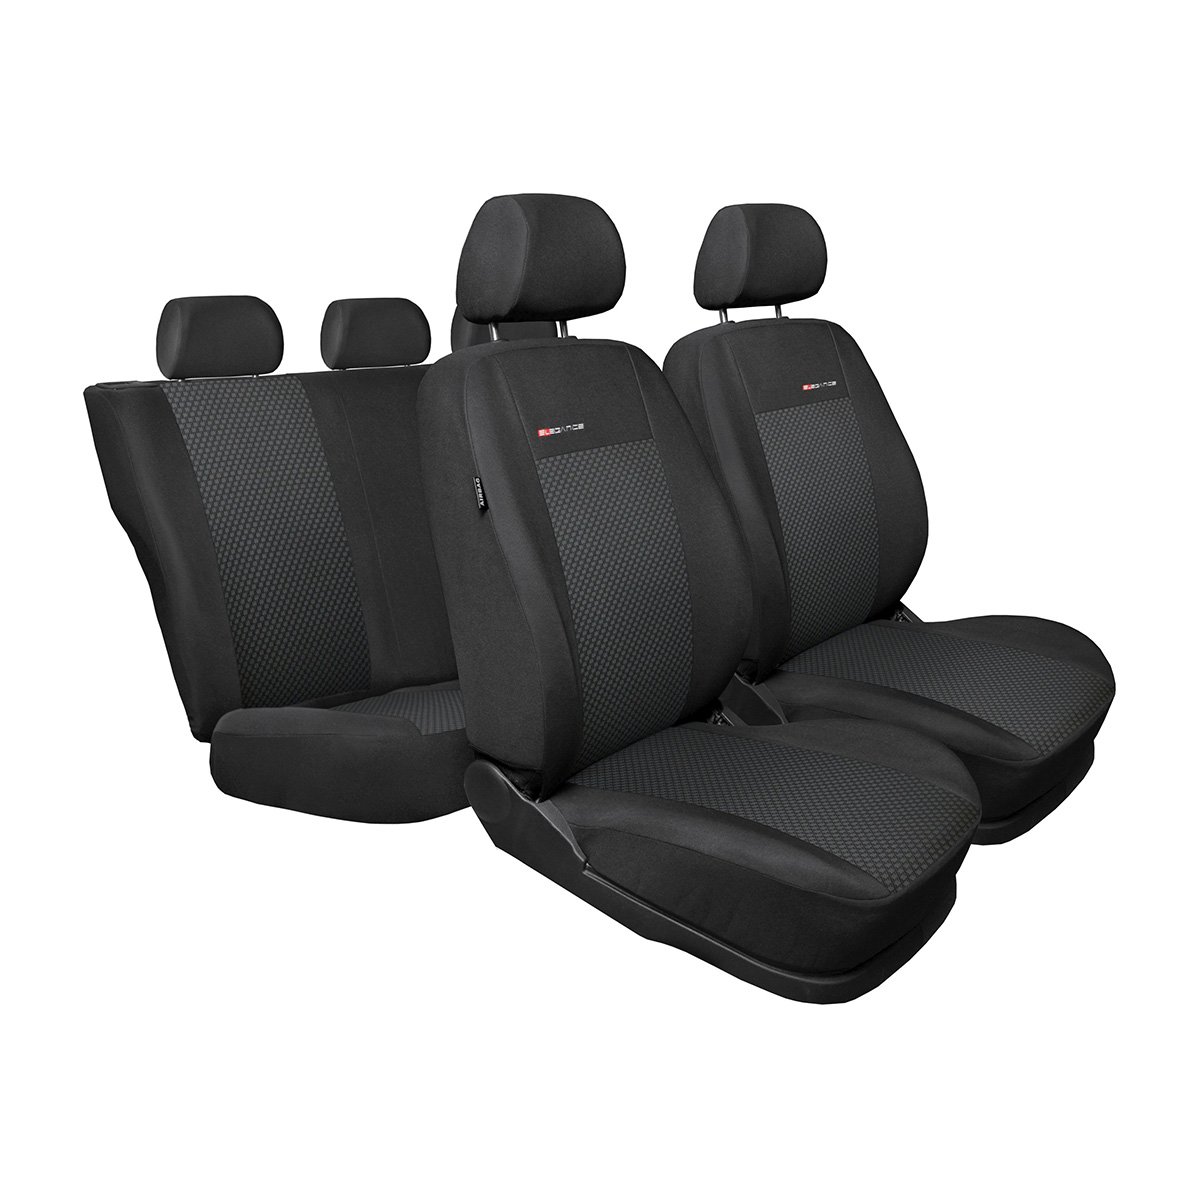 Mossa - Maßgeschneiderte Sitzbezüge Auto kompatibel mit Skoda Rapid Liftback, Spaceback (2012-2019) - kein Bezug für die hintere Armlehne - Autositzbezüge Schonbezüge für Autositze - E3 von Mossa